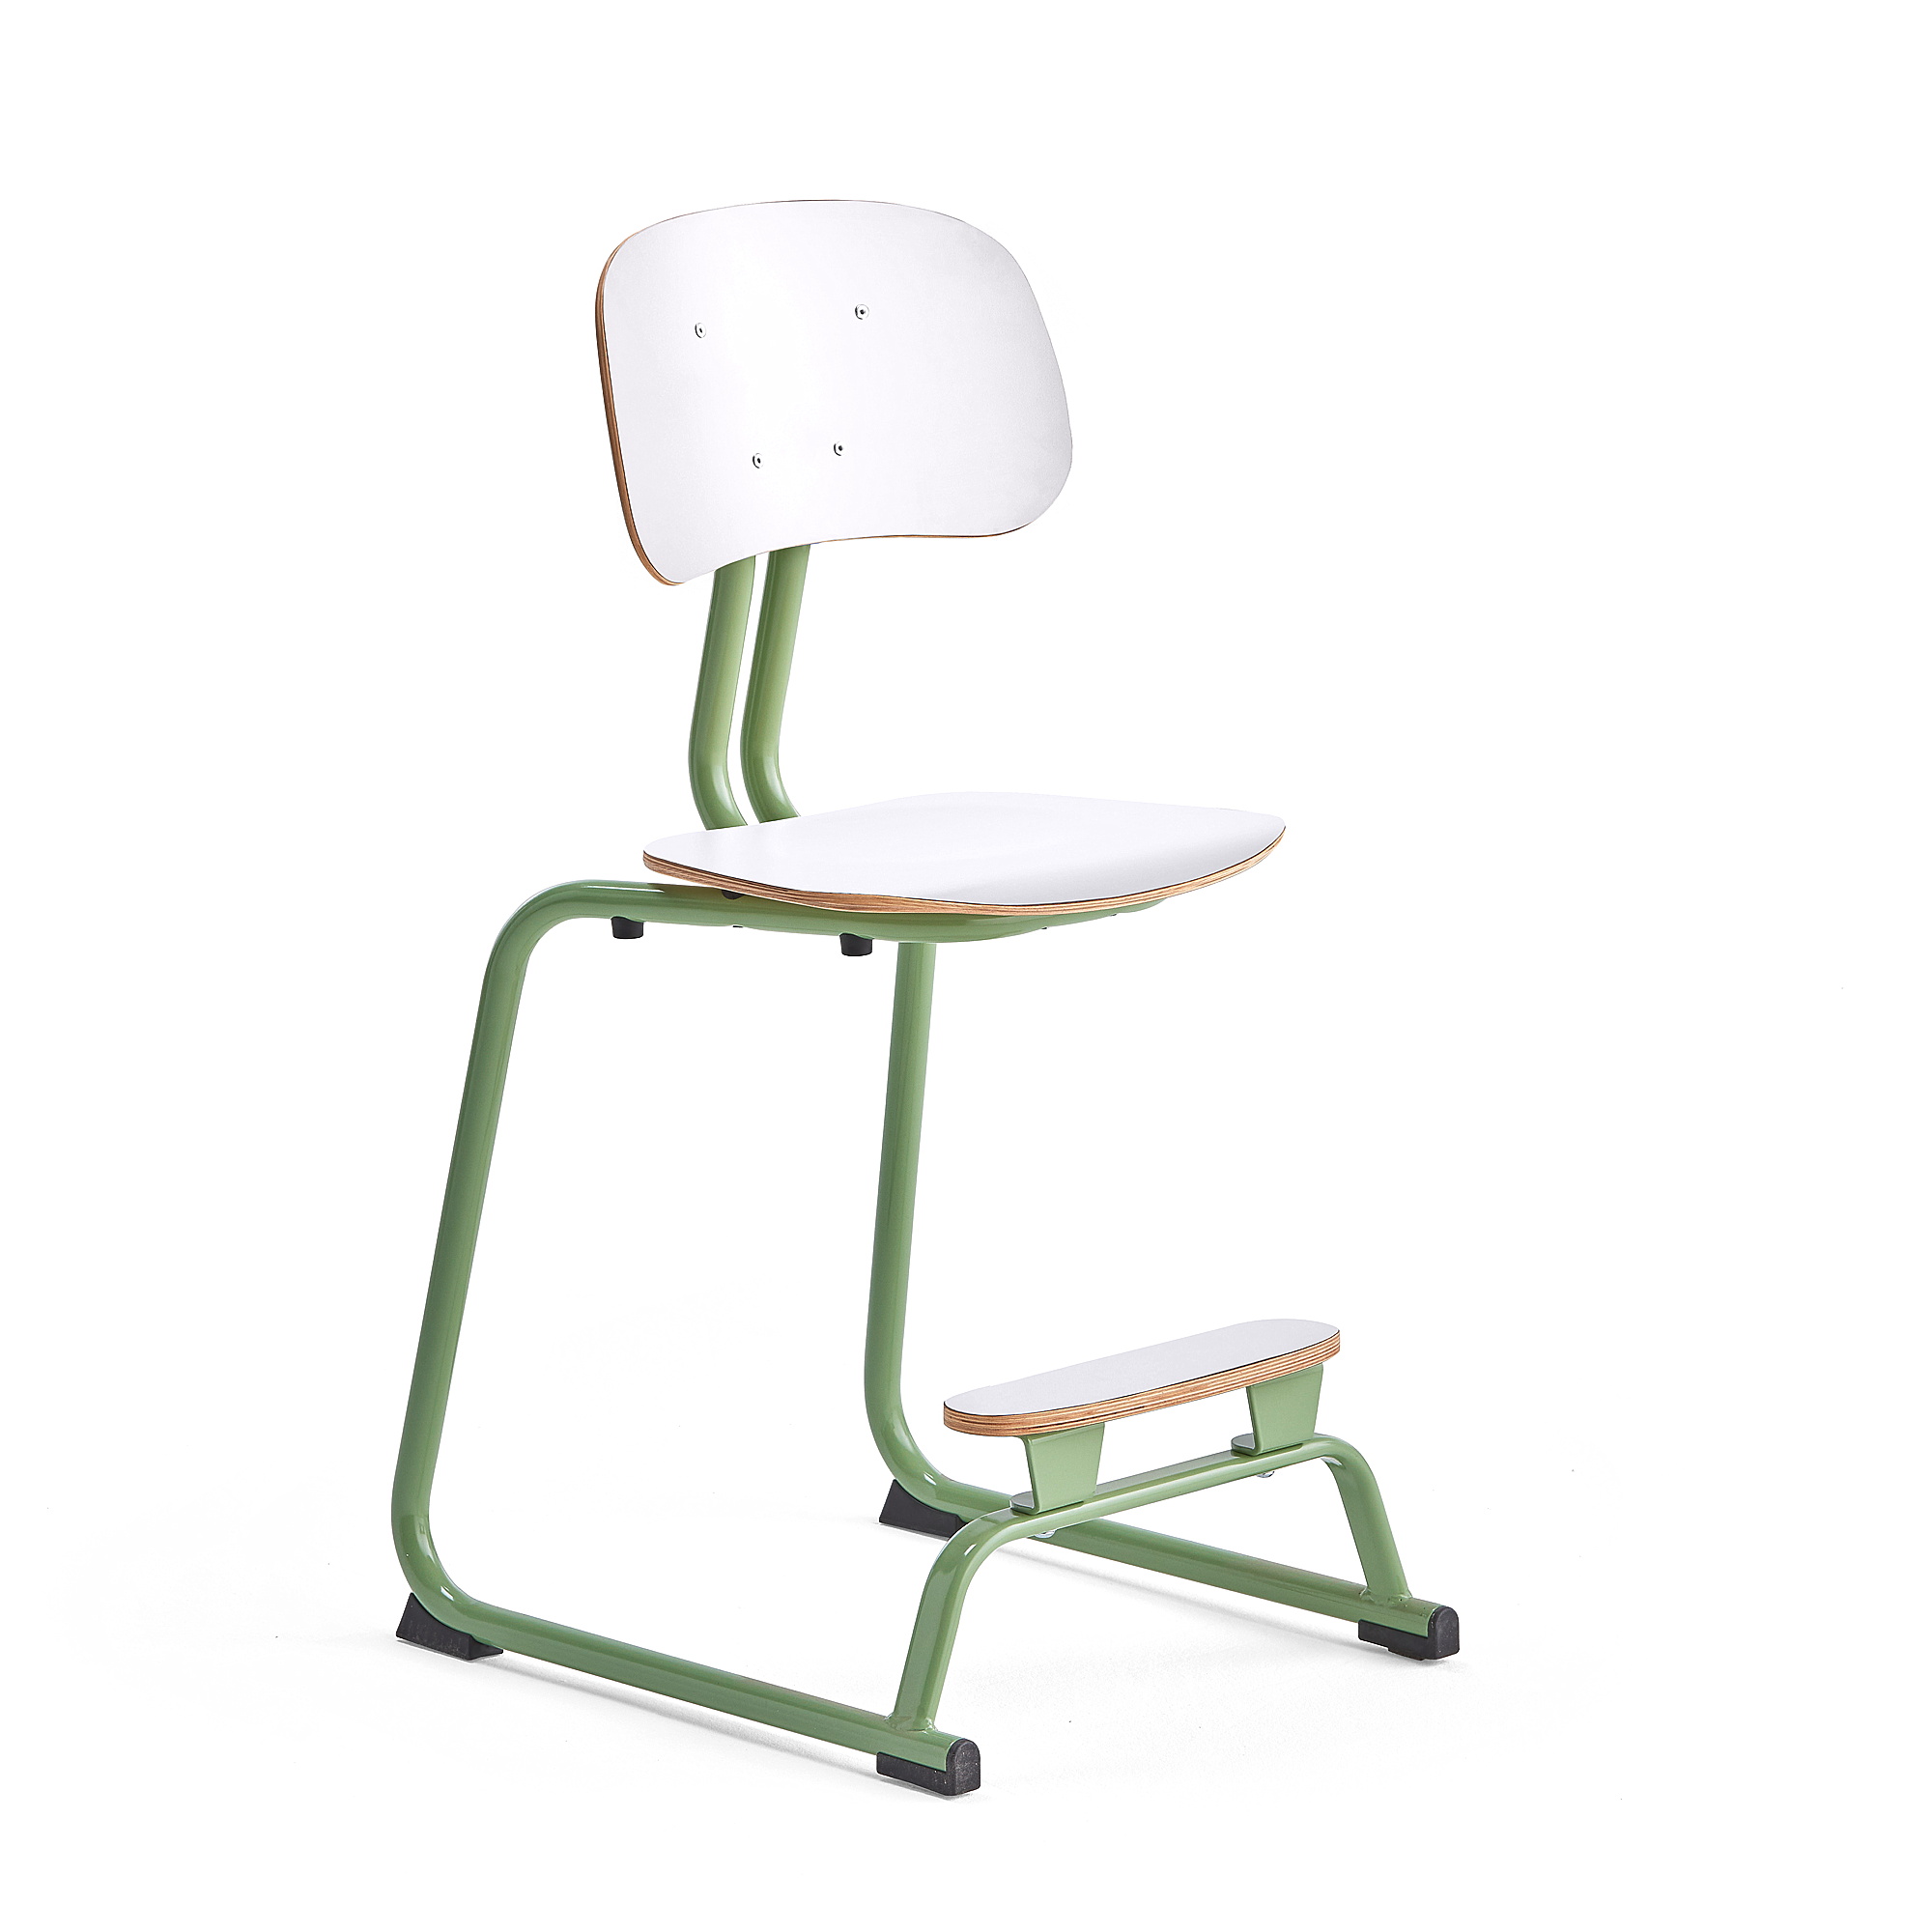 Školní židle YNGVE, ližinová podnož, výška 520 mm, zelená/bílá